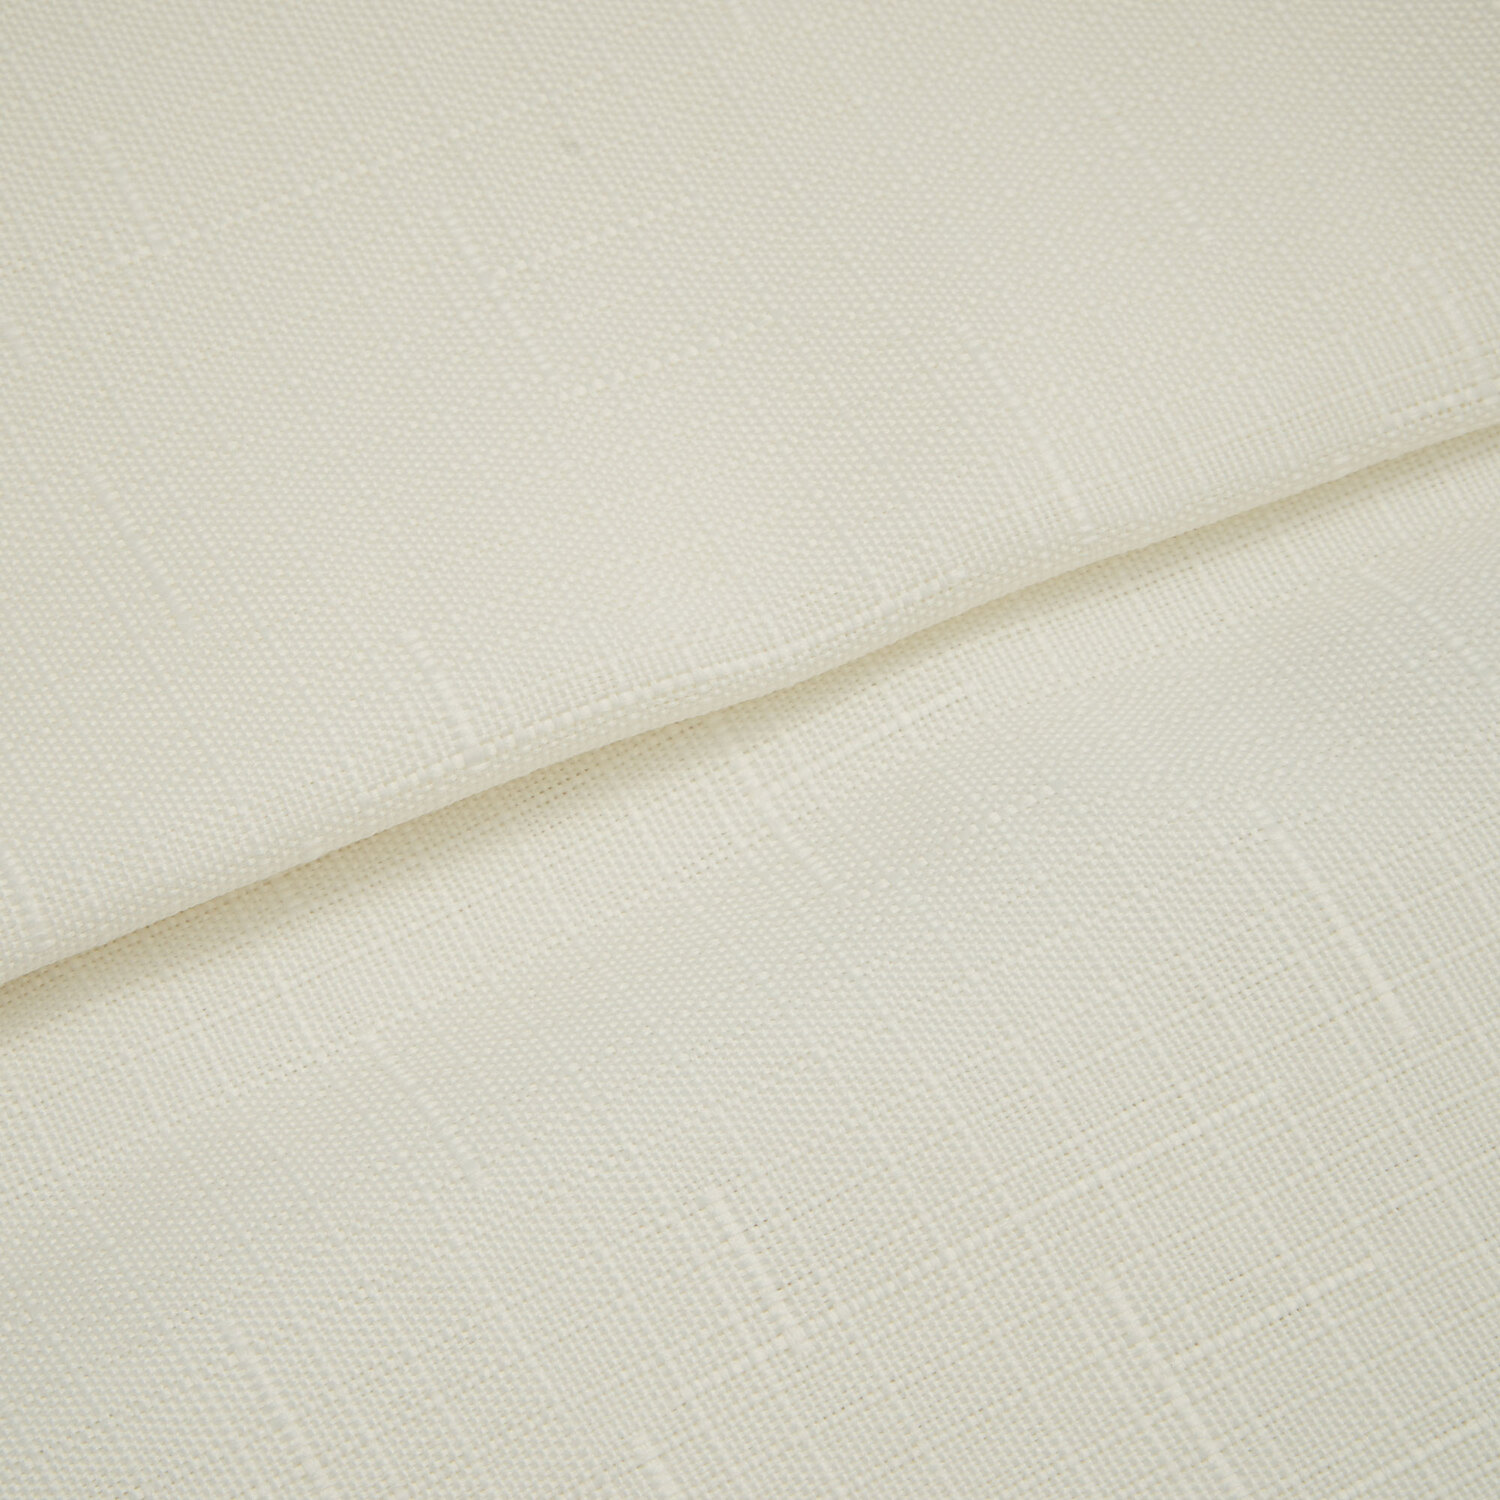 Divante White Linen Look Tablecloth 180 x 130cm Image 3